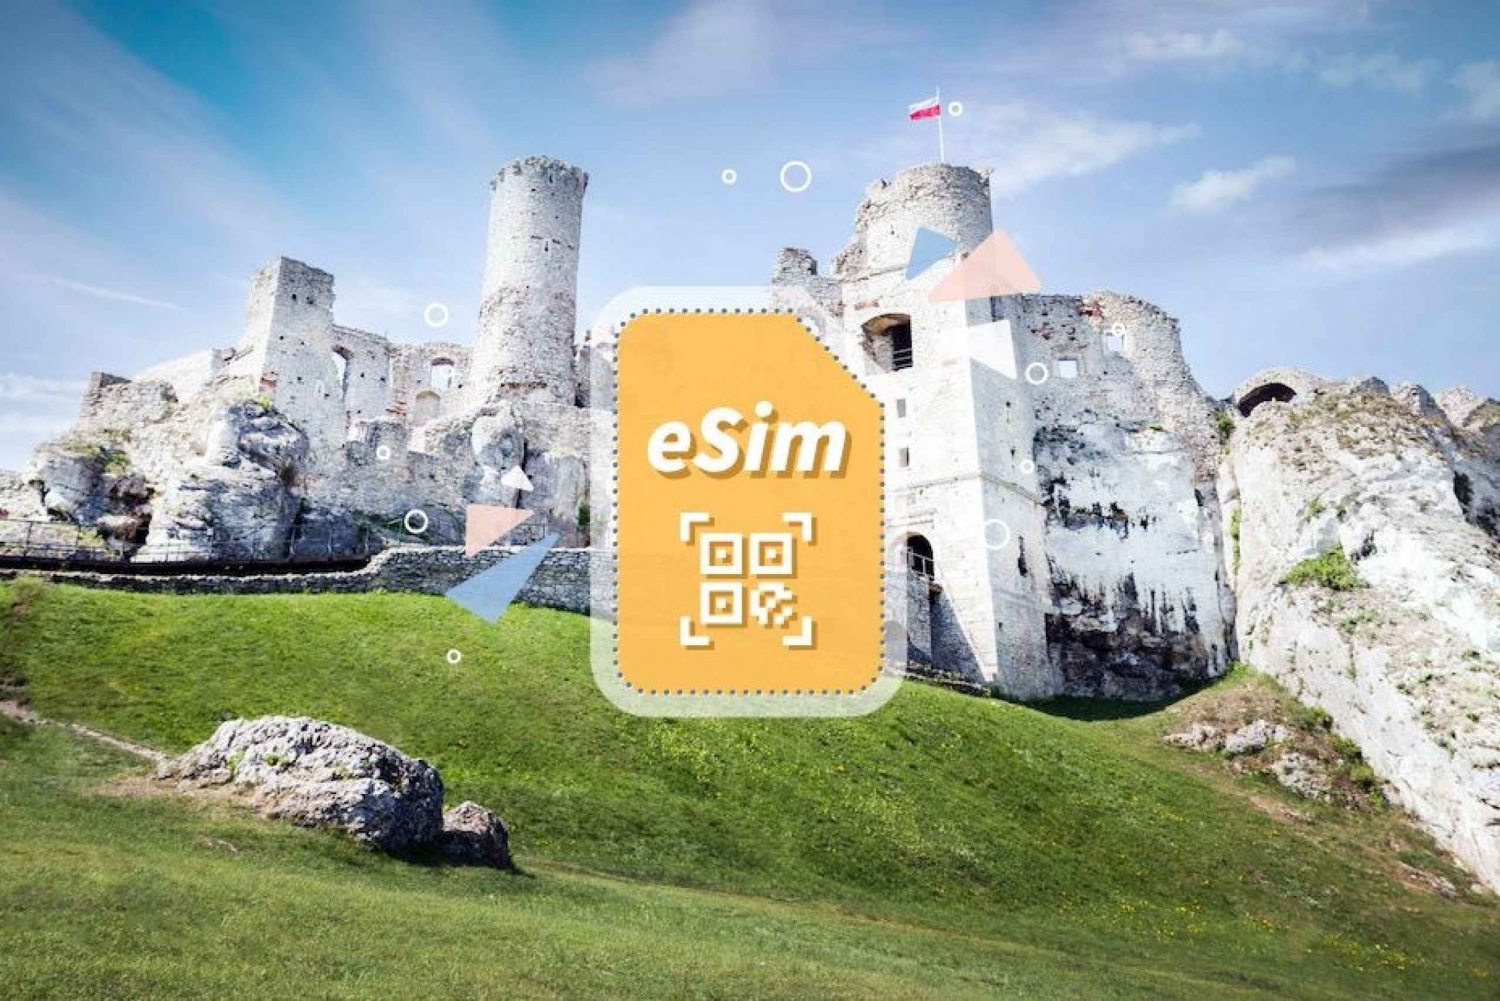 Polonia/Europa: Piano dati mobile 5G eSim